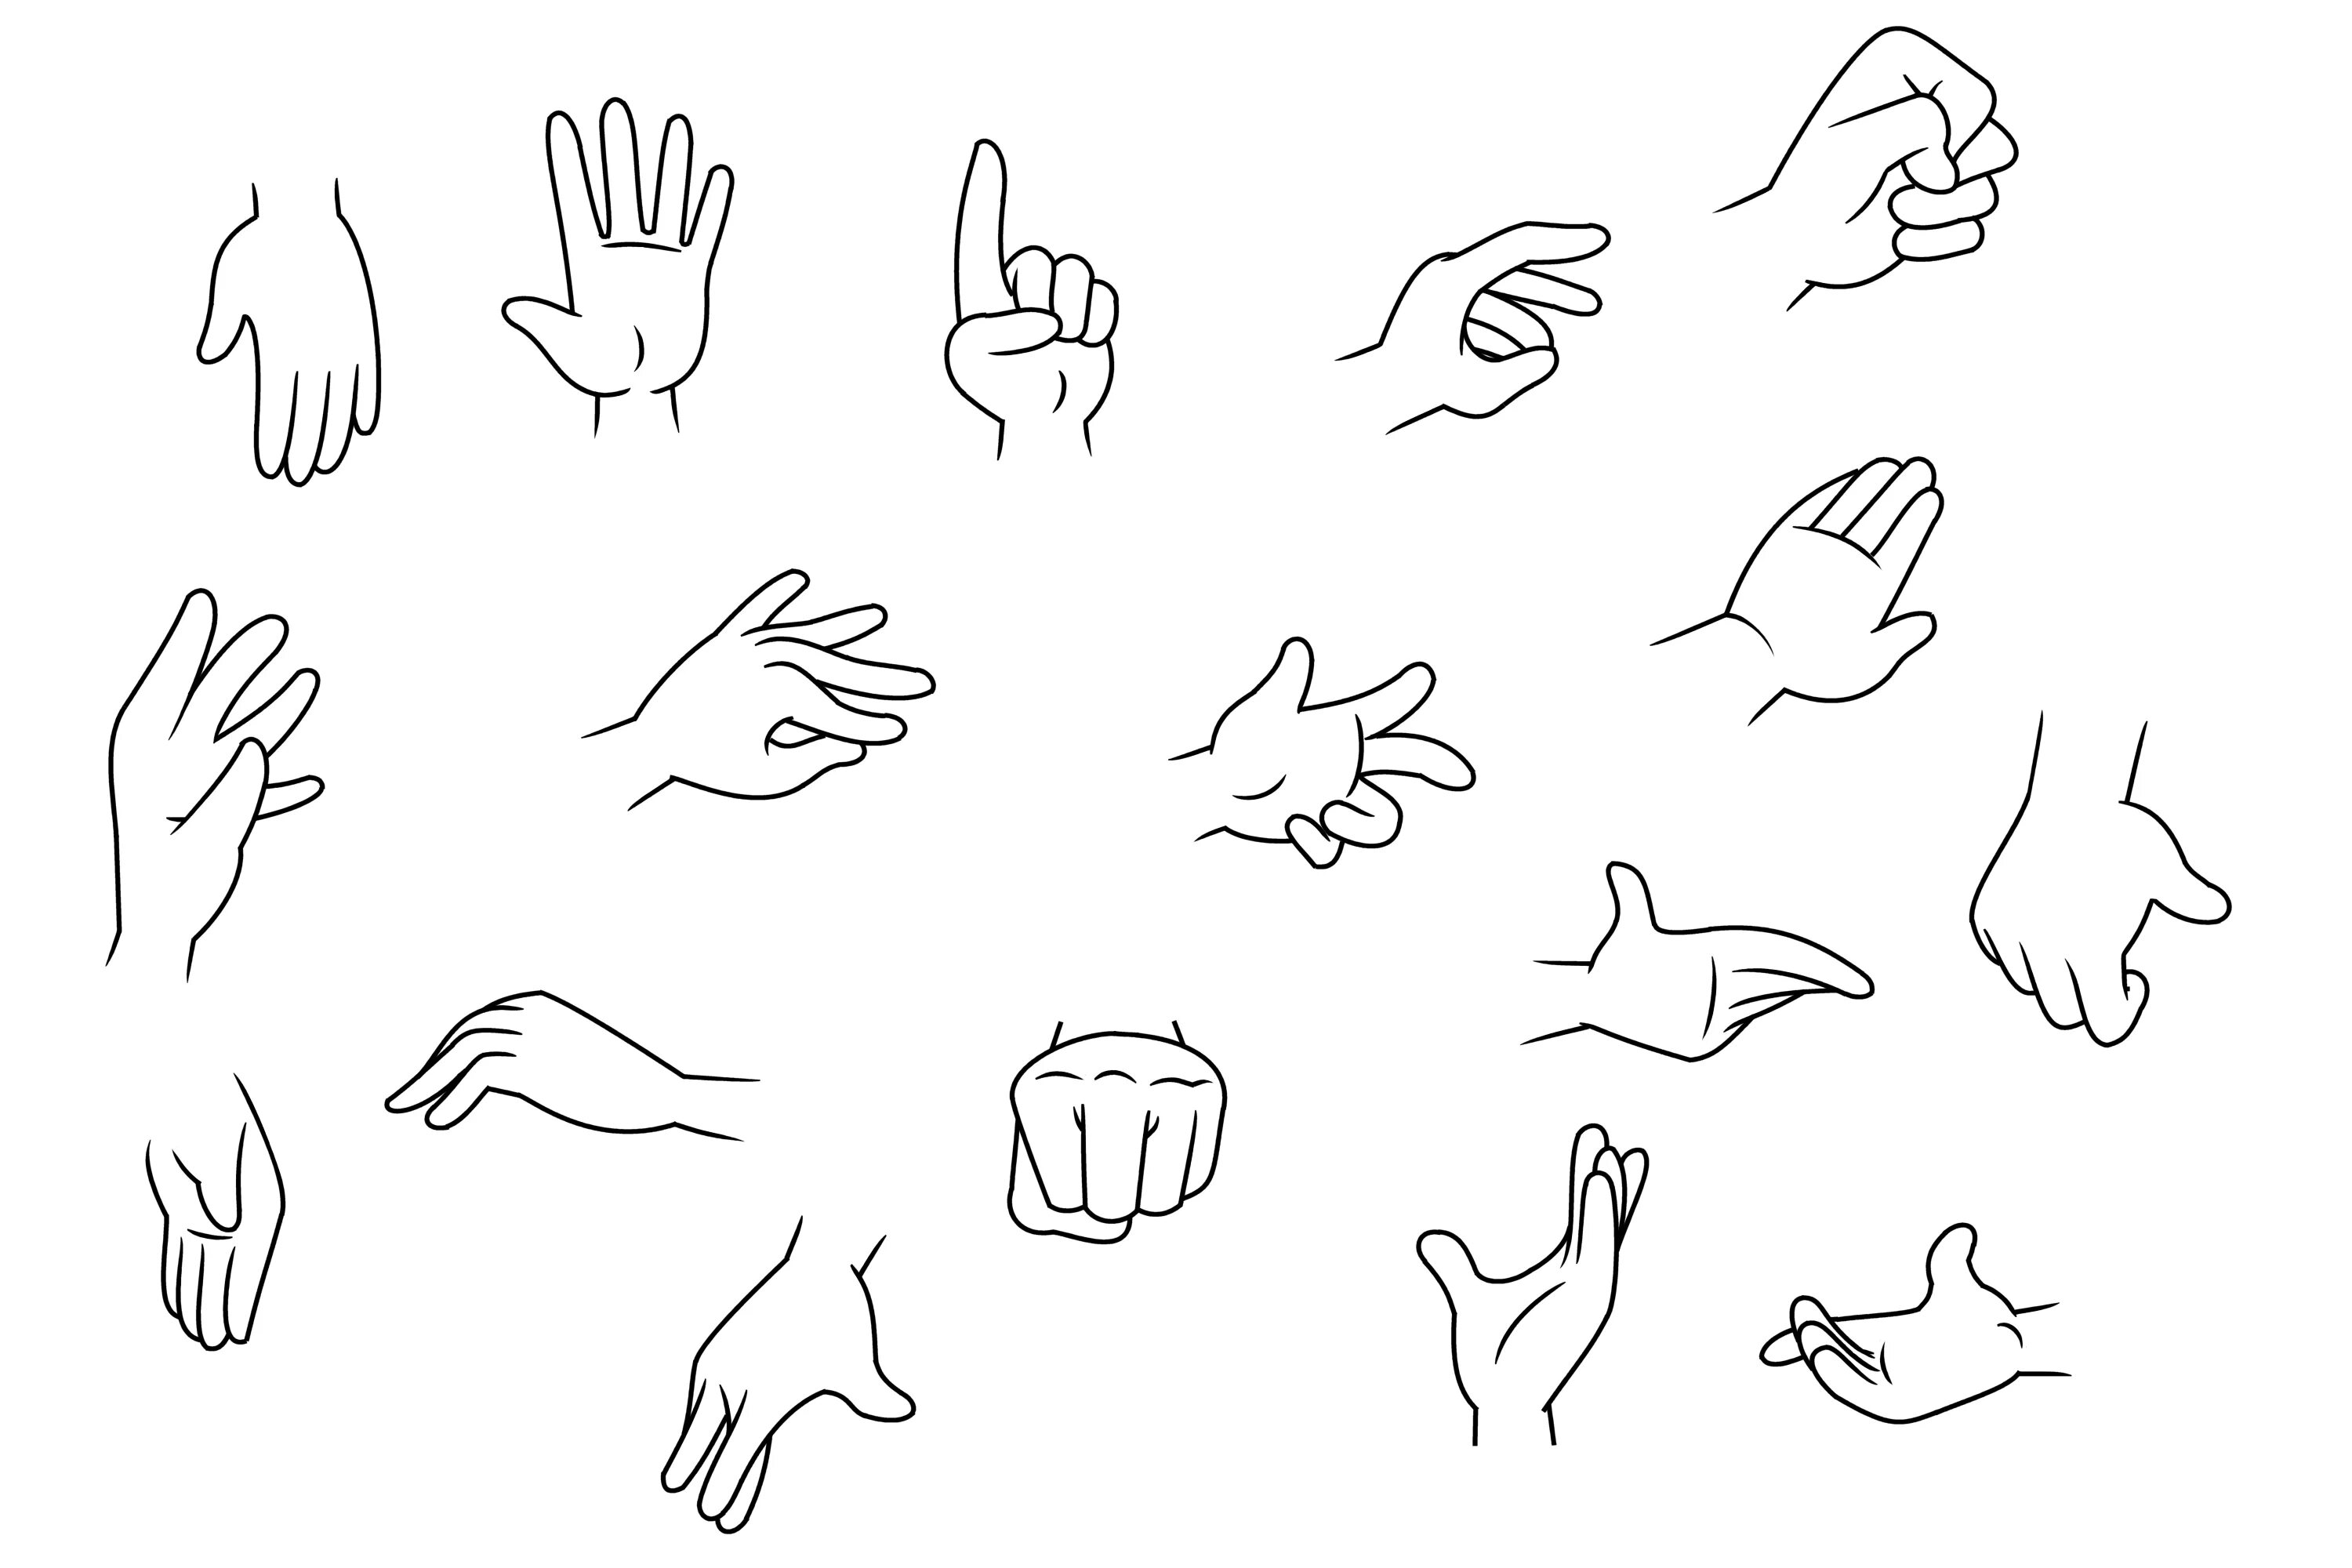 Easy hands. Кисть руки рисунок. Наброски кистей рук. Жесты рук для рисования. Рука нарисованная.